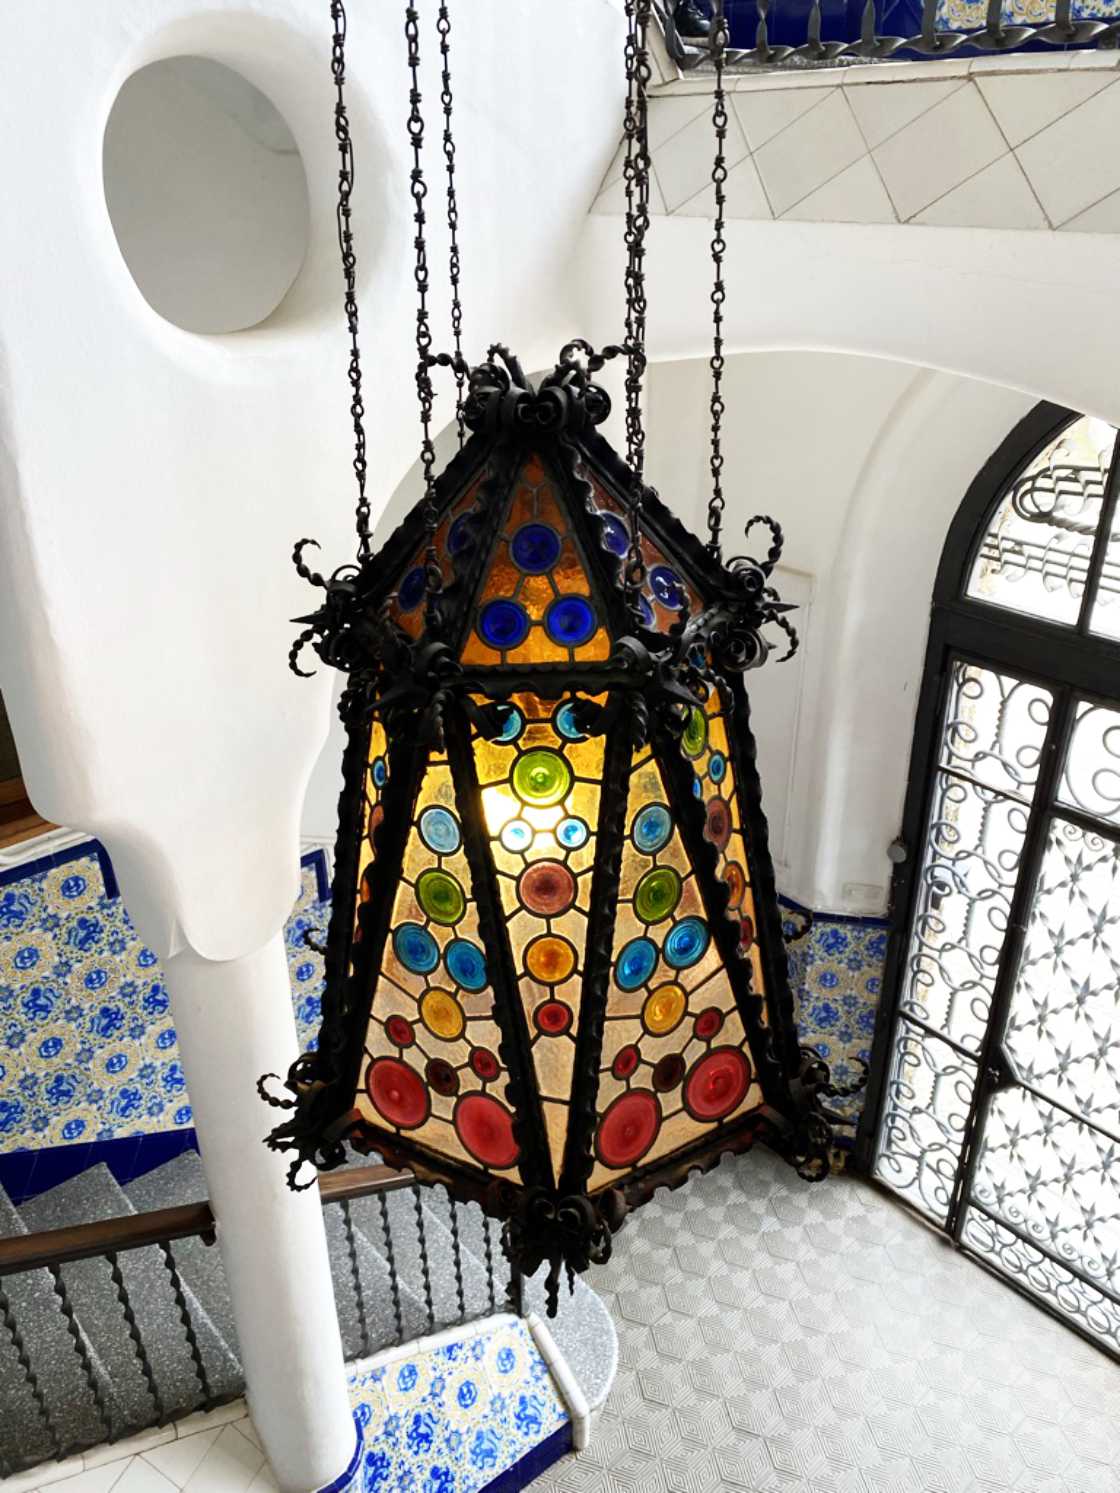 Torre Bellesguard Barcelona - Lamp met glas in lood